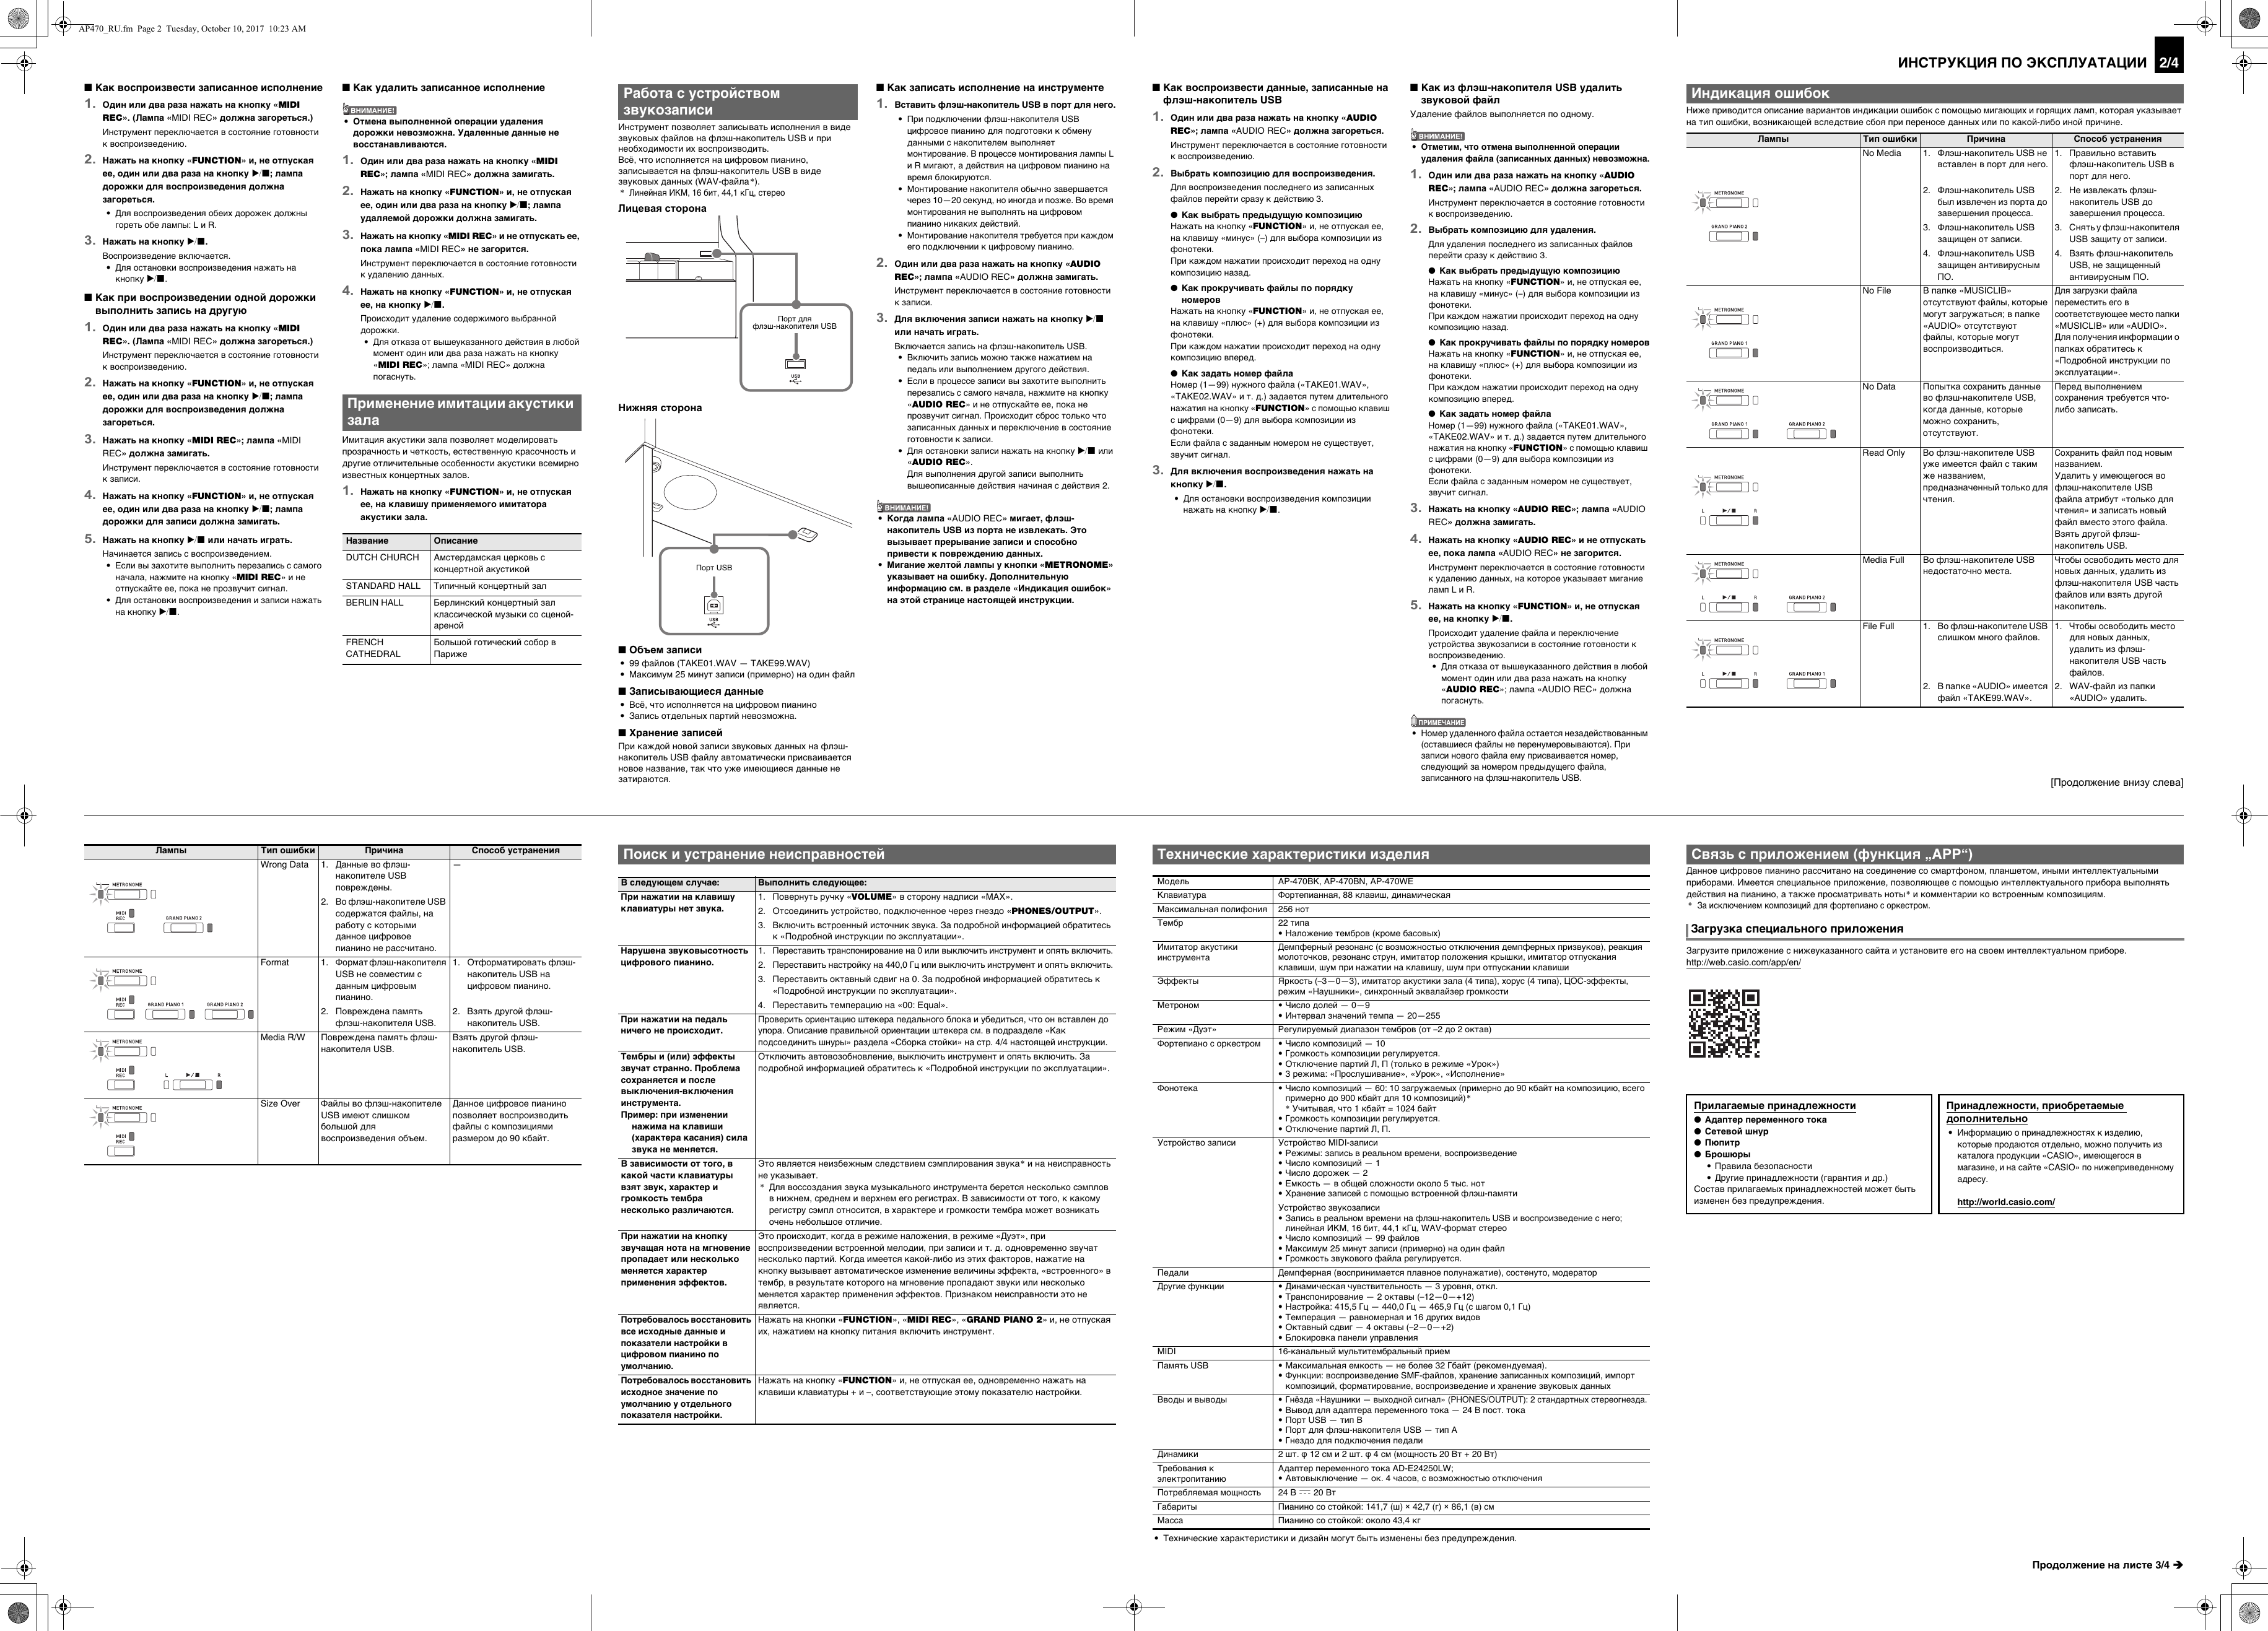 Page 2 of 4 - Casio AP470_RU Web_AP470-RU-1A_2A Web AP470-RU-1A 2A RU